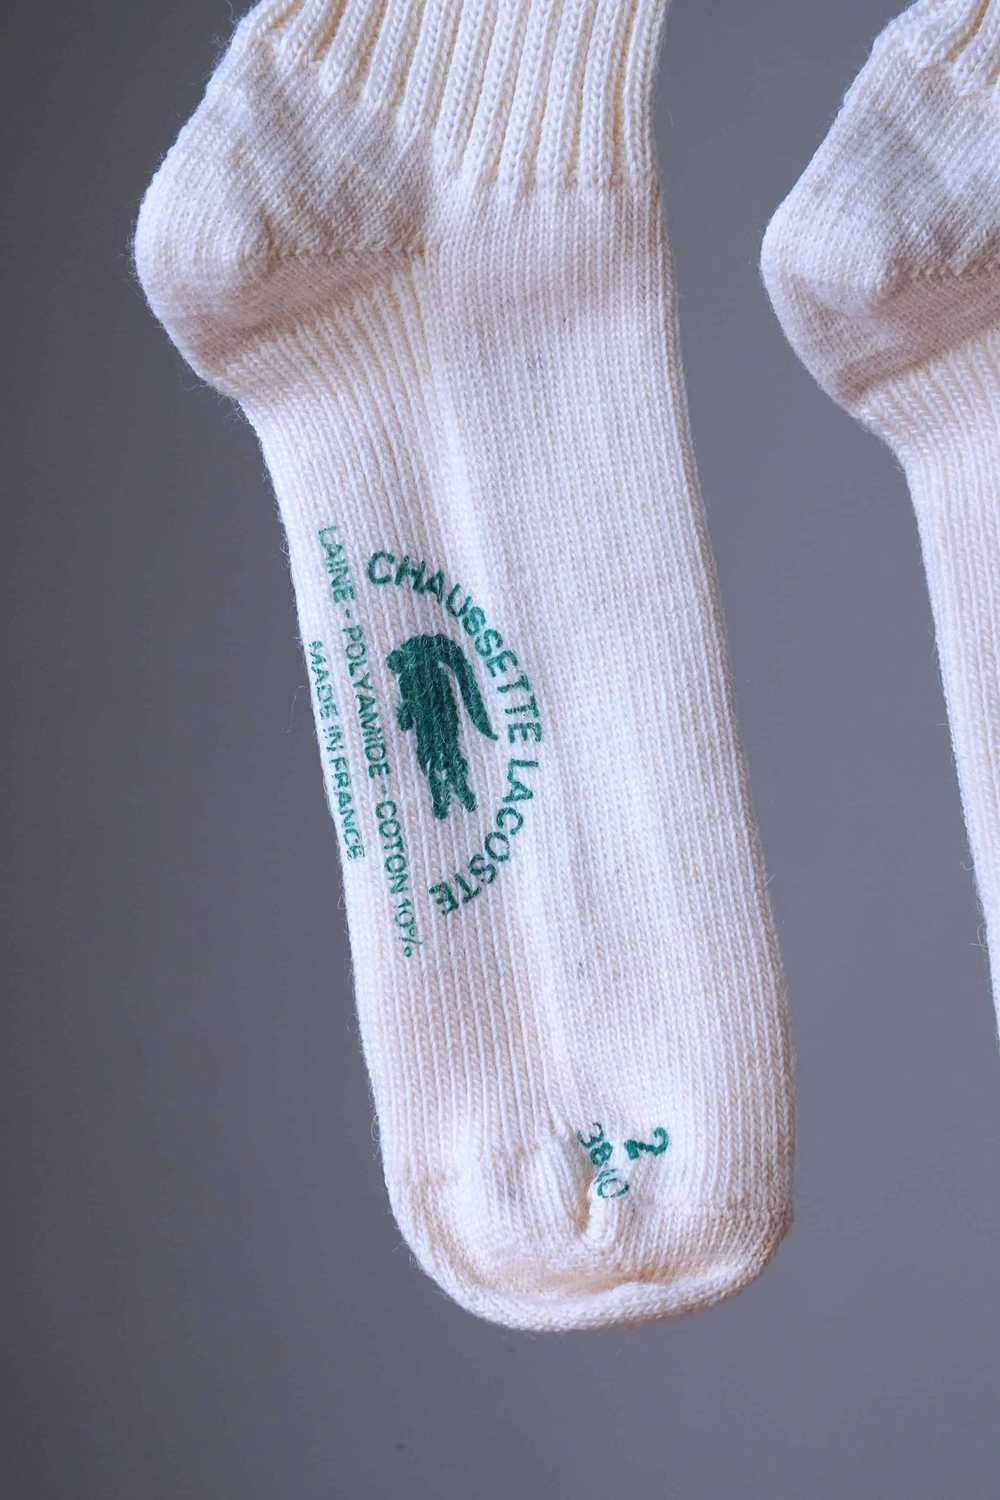 LACOSTE Striped 70's Wool Socks - image 2